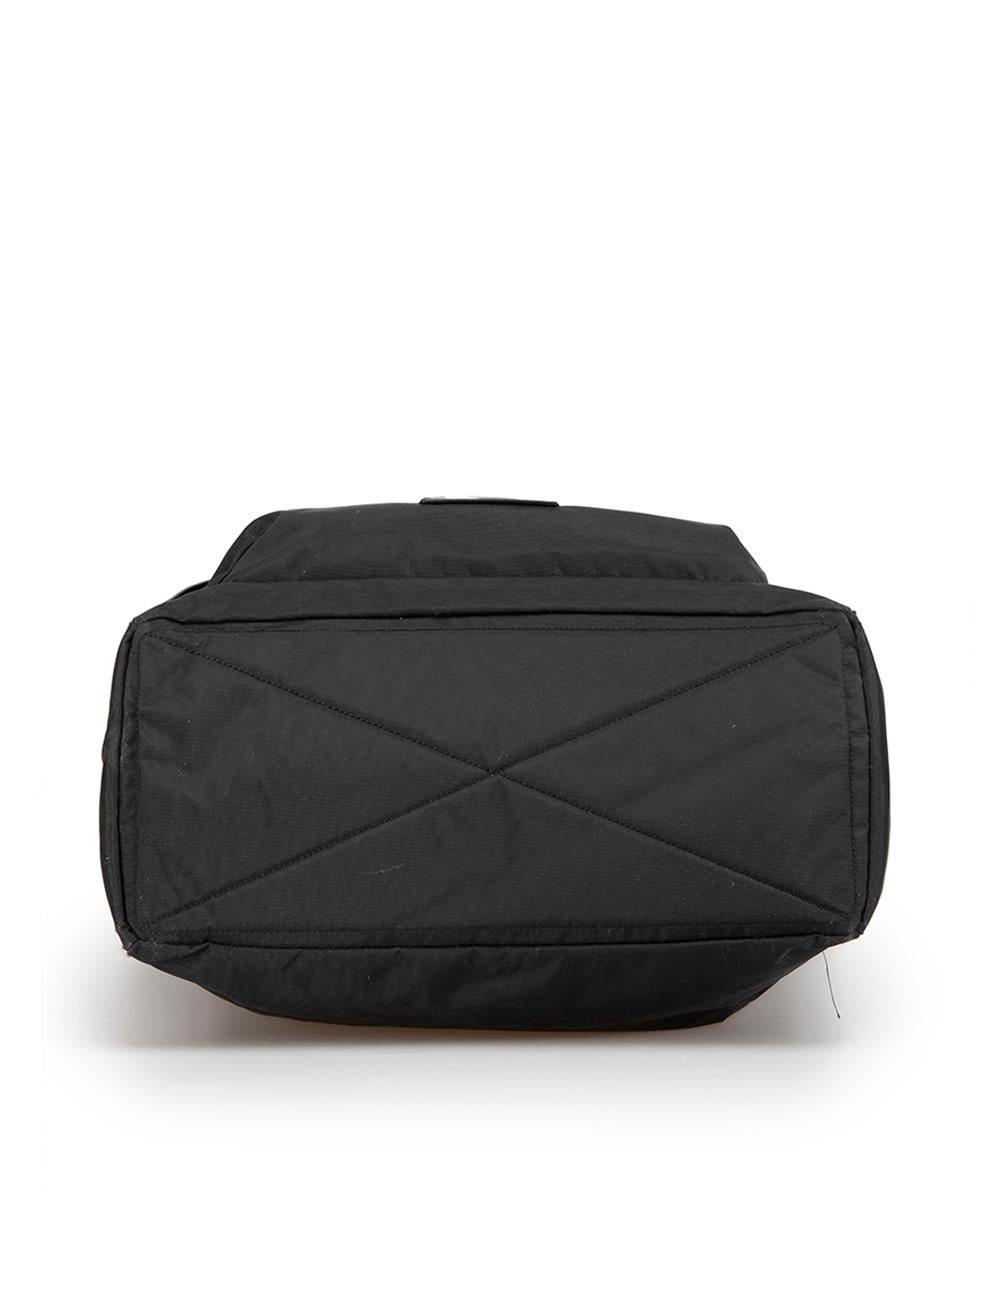 Marc Jacobs Women's Black Canvas Duffle Bag 1